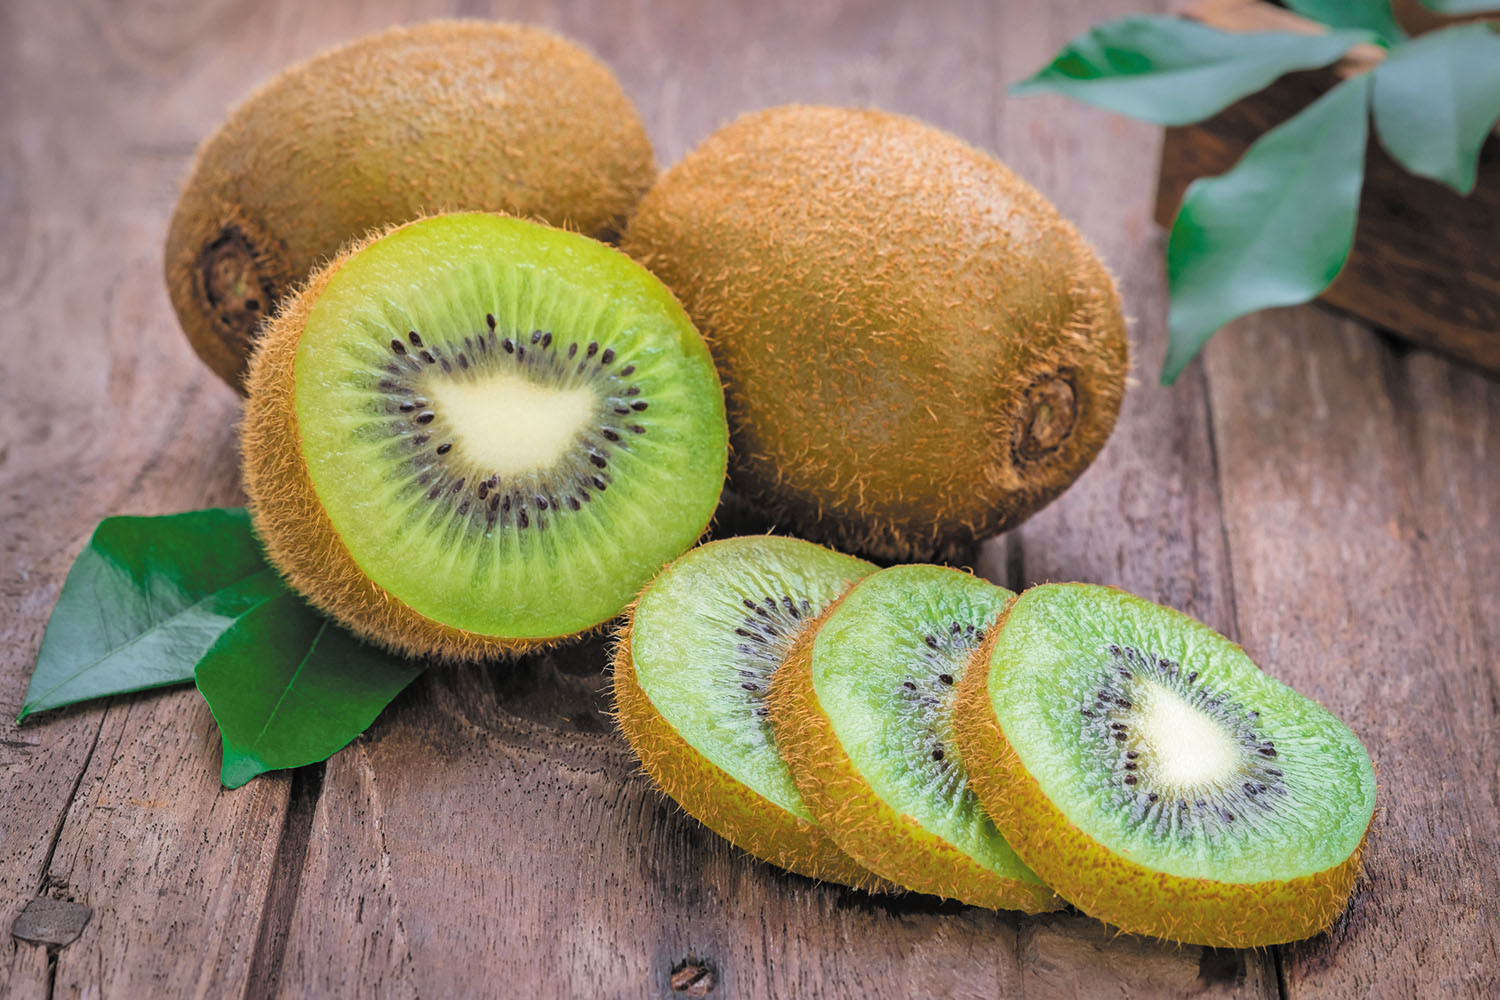 Benefits of Kiwi: जानिए कीवी खाने के जबरदस्त फायदे, जिसे जानकर आप भी चौंक जाएंगे